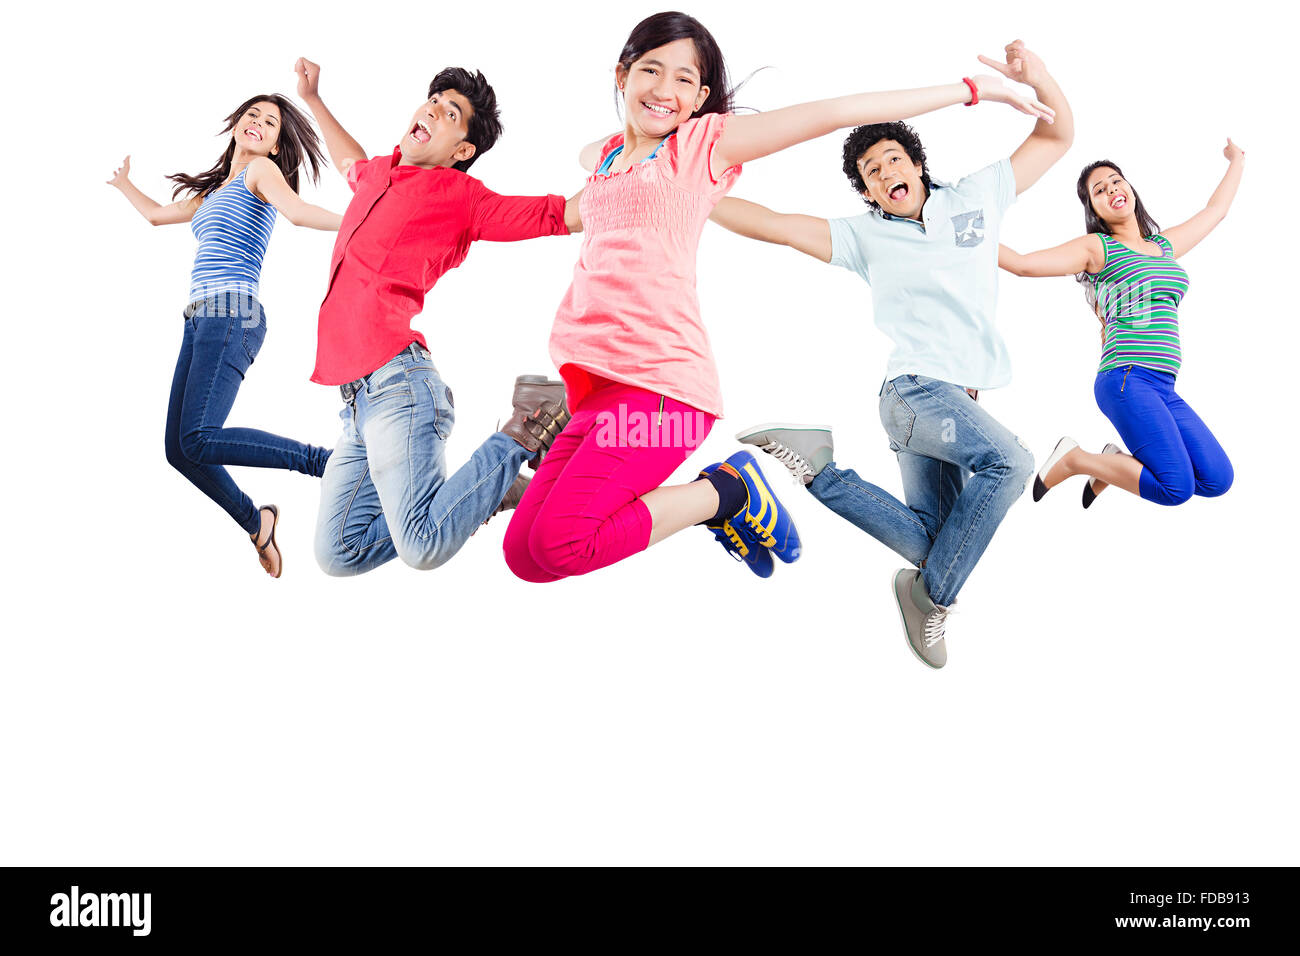 Jugendliche Gruppe Freunde Studenten feiern Springen Stockfoto